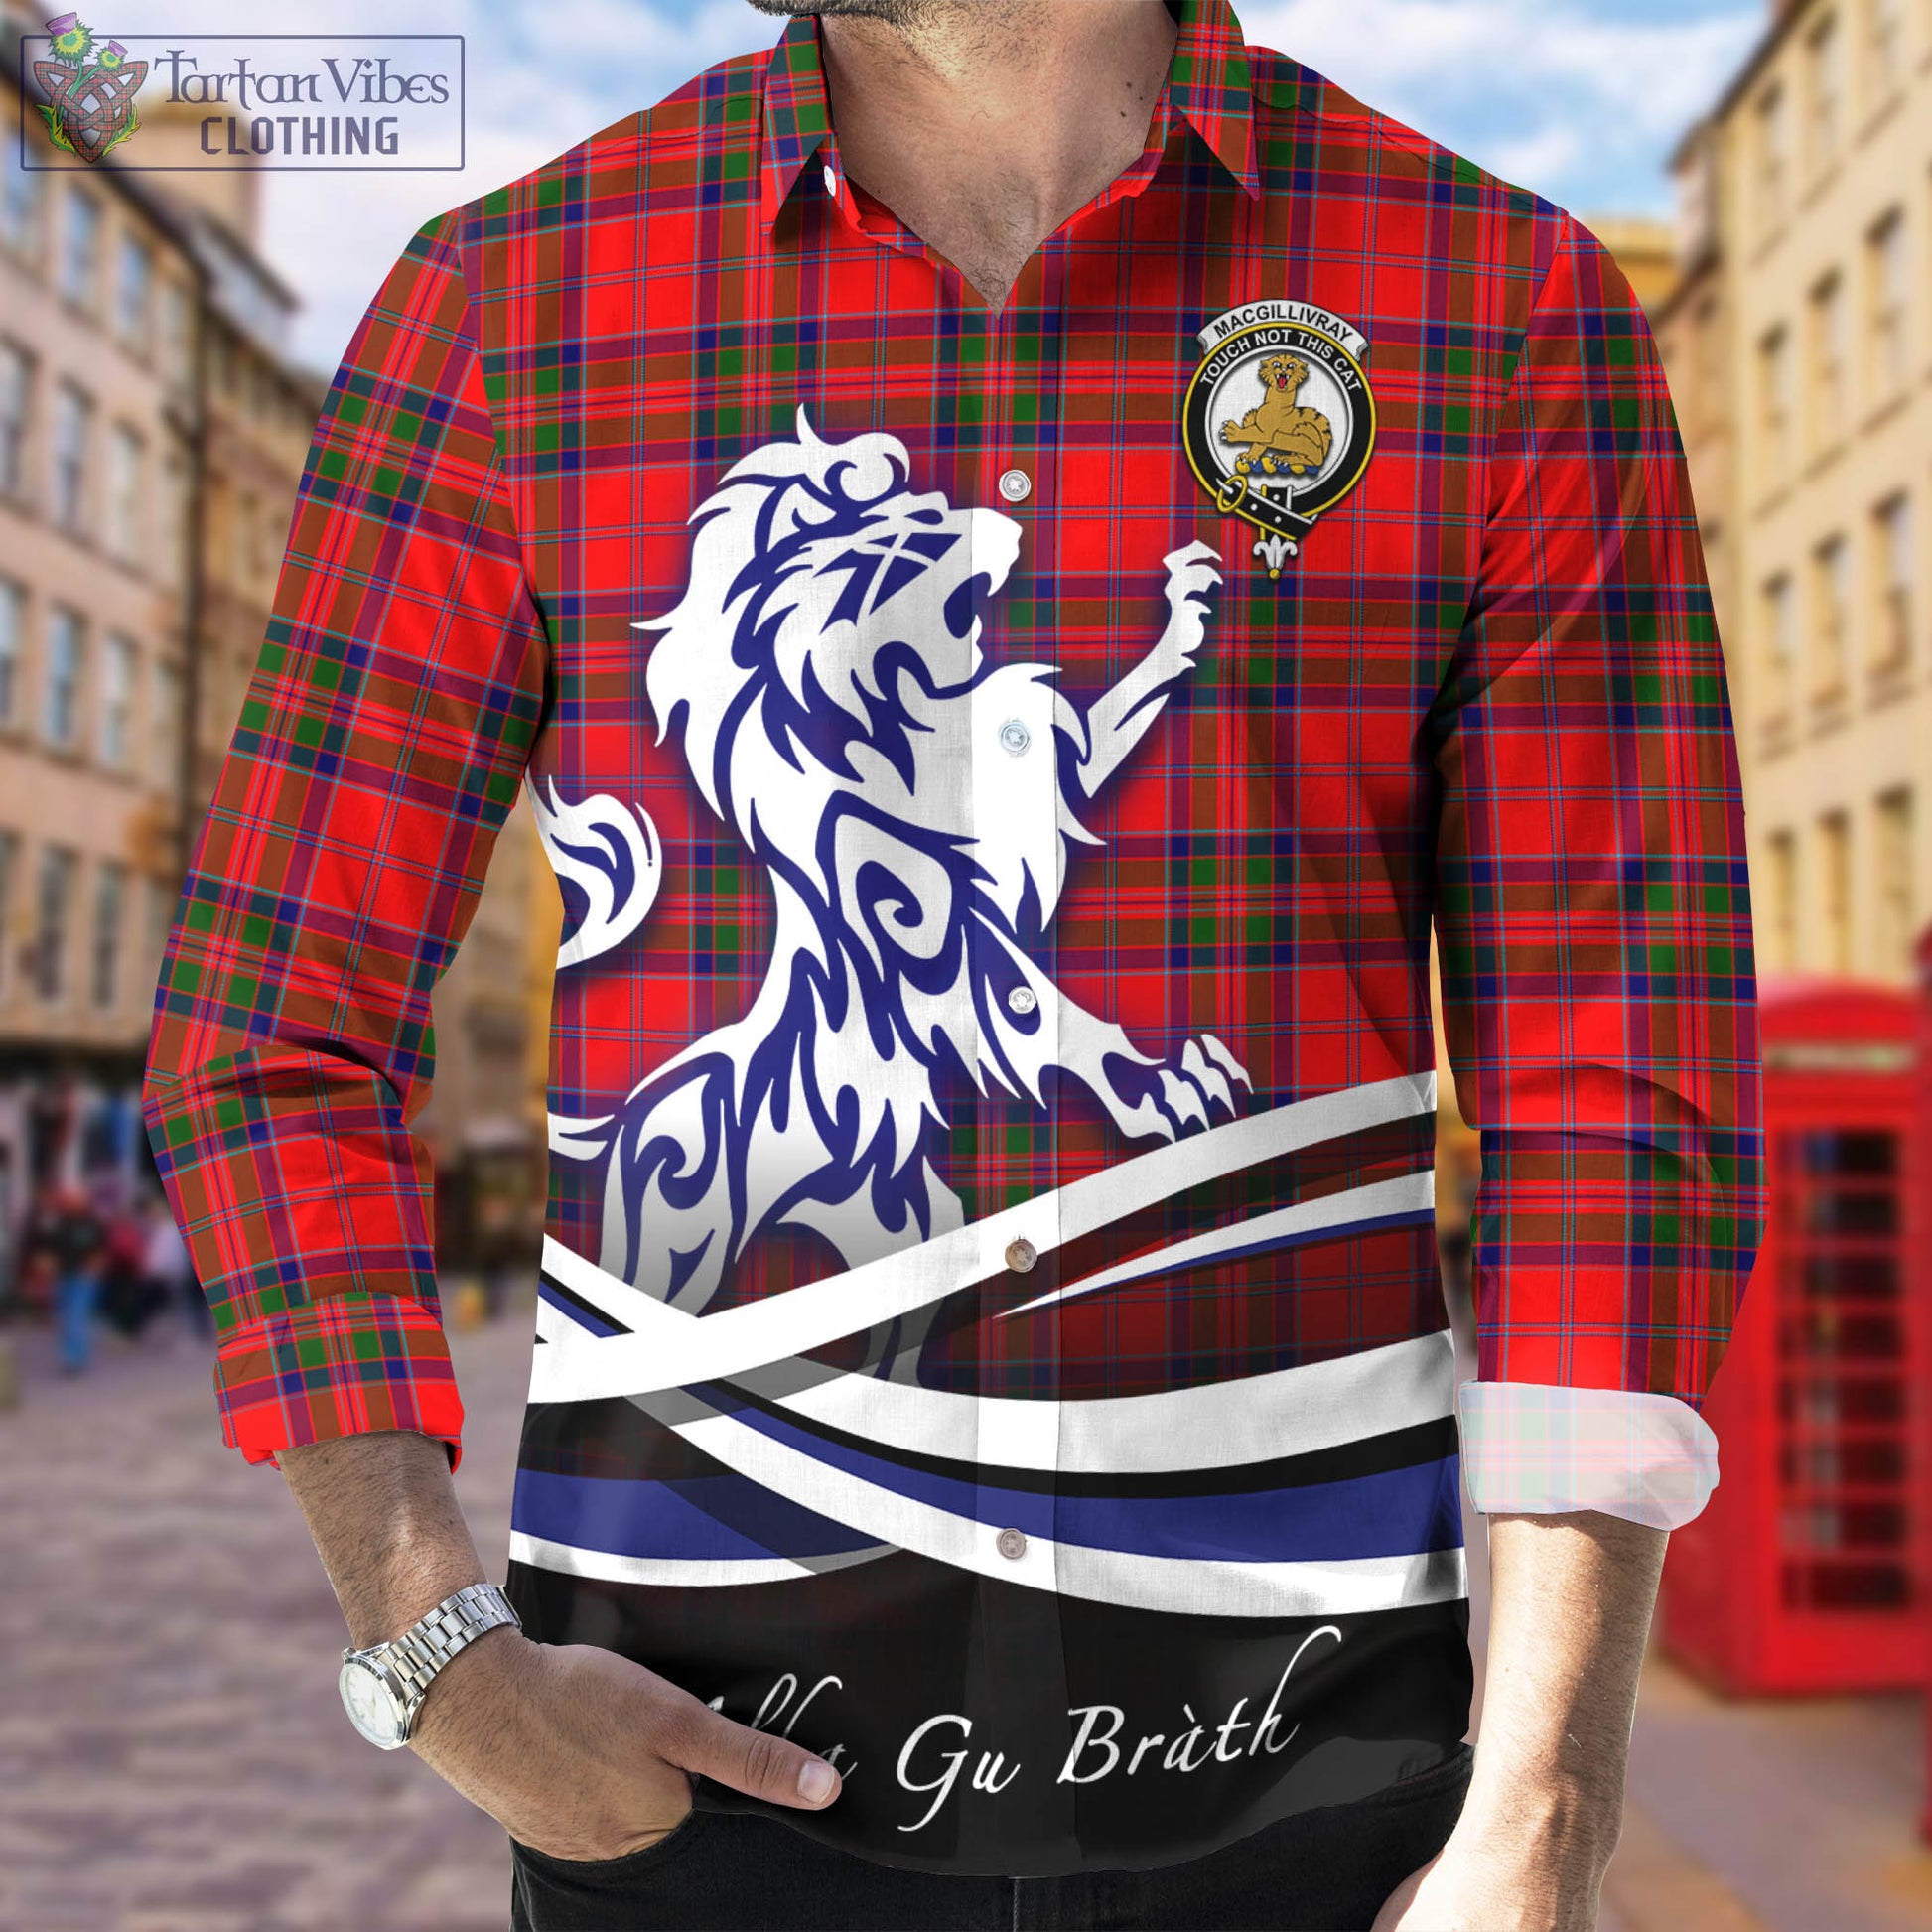 macgillivray-modern-tartan-long-sleeve-button-up-shirt-with-alba-gu-brath-regal-lion-emblem